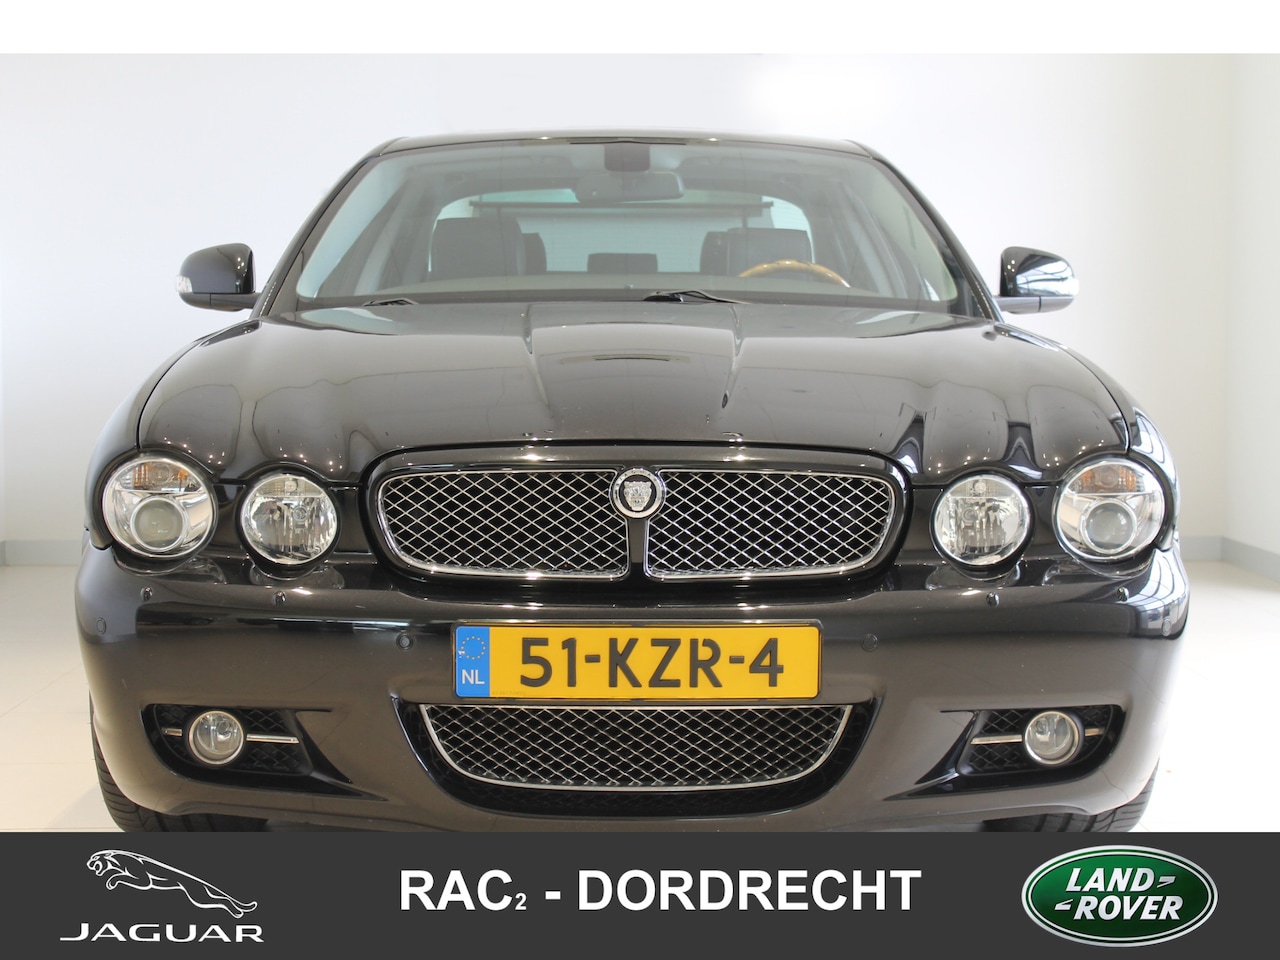 Jaguar XJ - 4.2 V8 Sovereign 4.2 V8 Sovereign - AutoWereld.nl